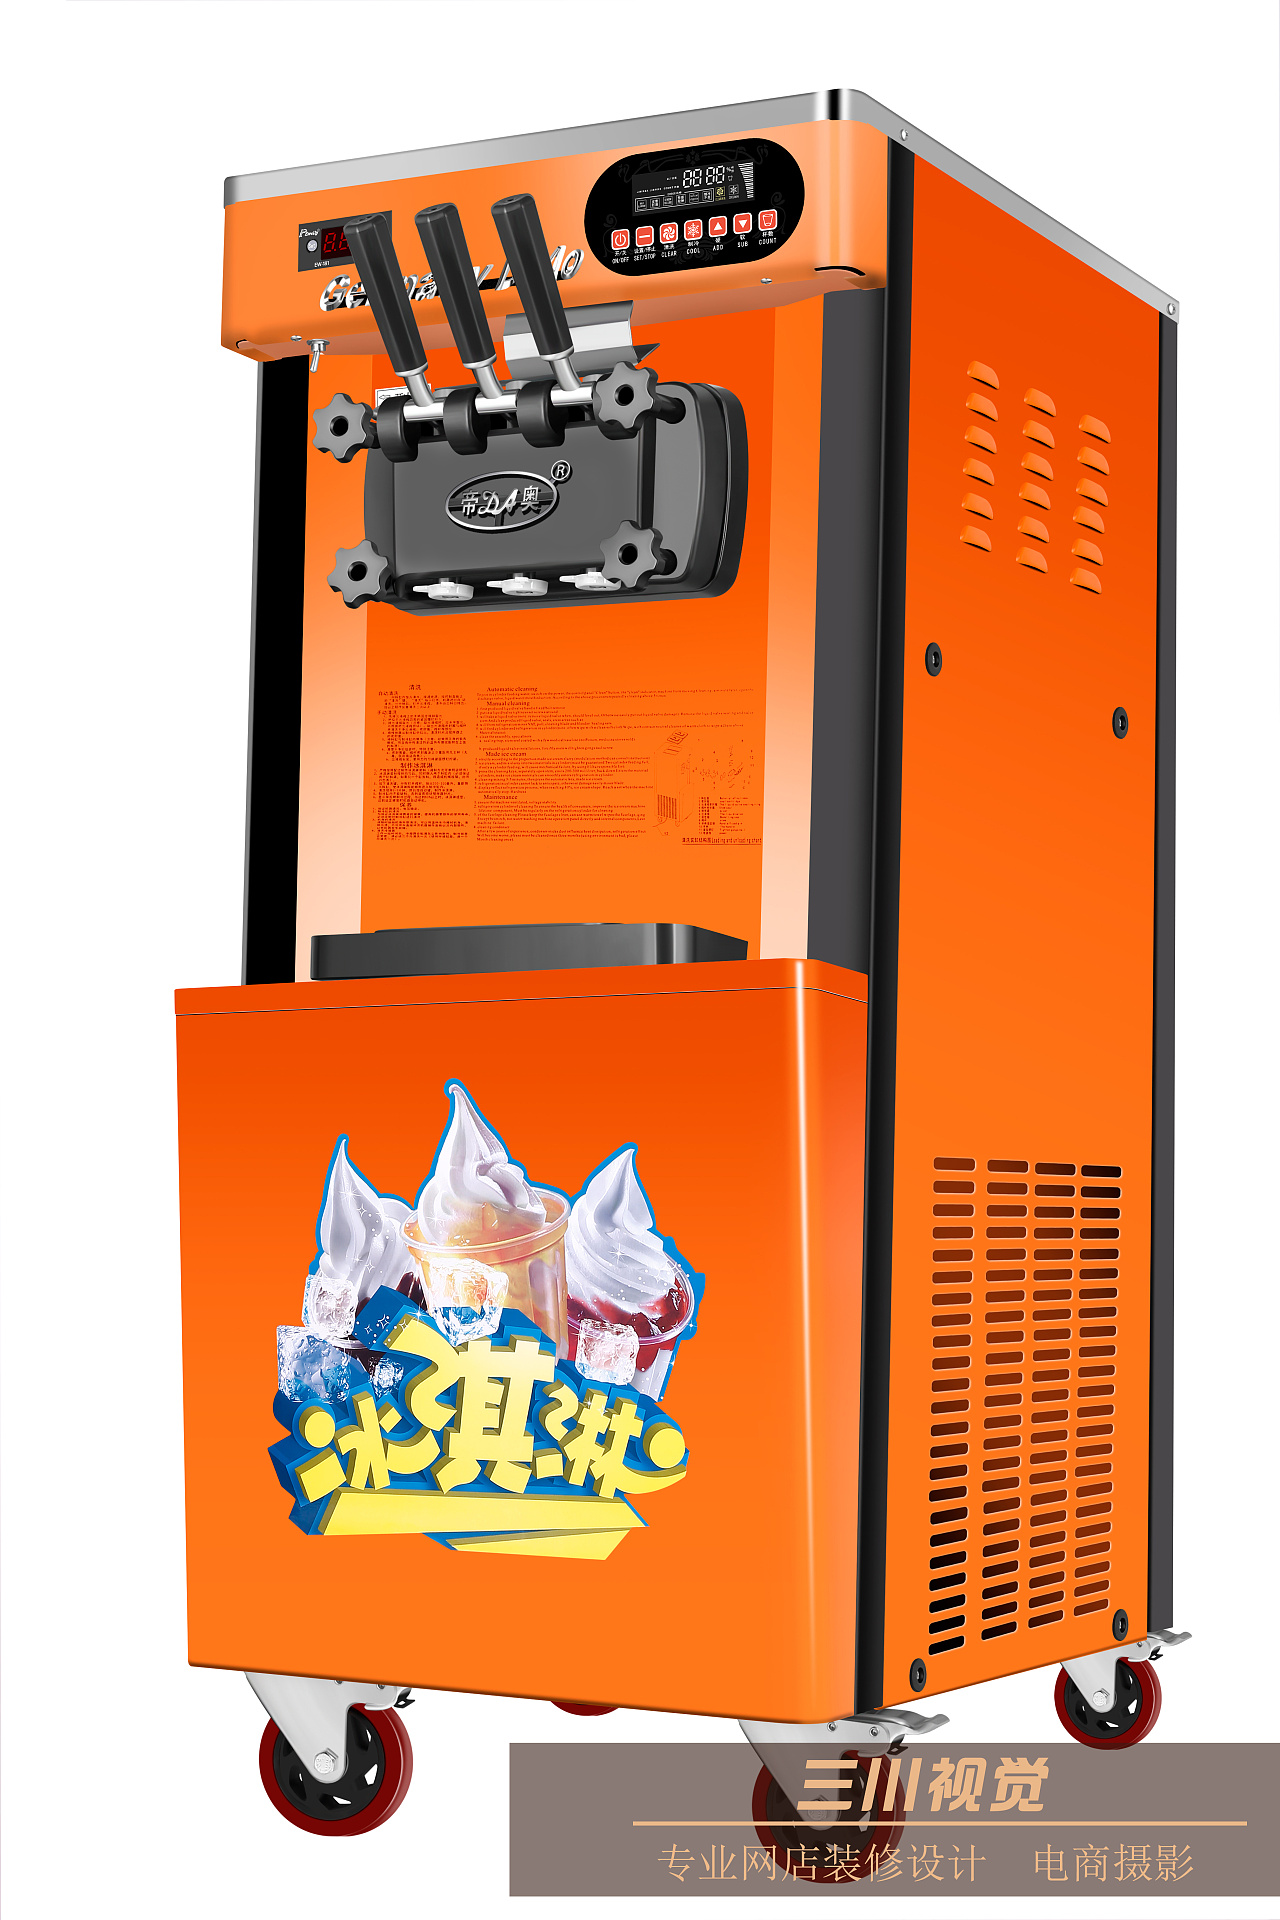 YB-20冰淇淋机商用移动，全自动硬冰激凌机器 - 金利生 (中国 广东省 生产商) - 食品饮料和粮食加工机械 - 工业设备 产品 「自助贸易」